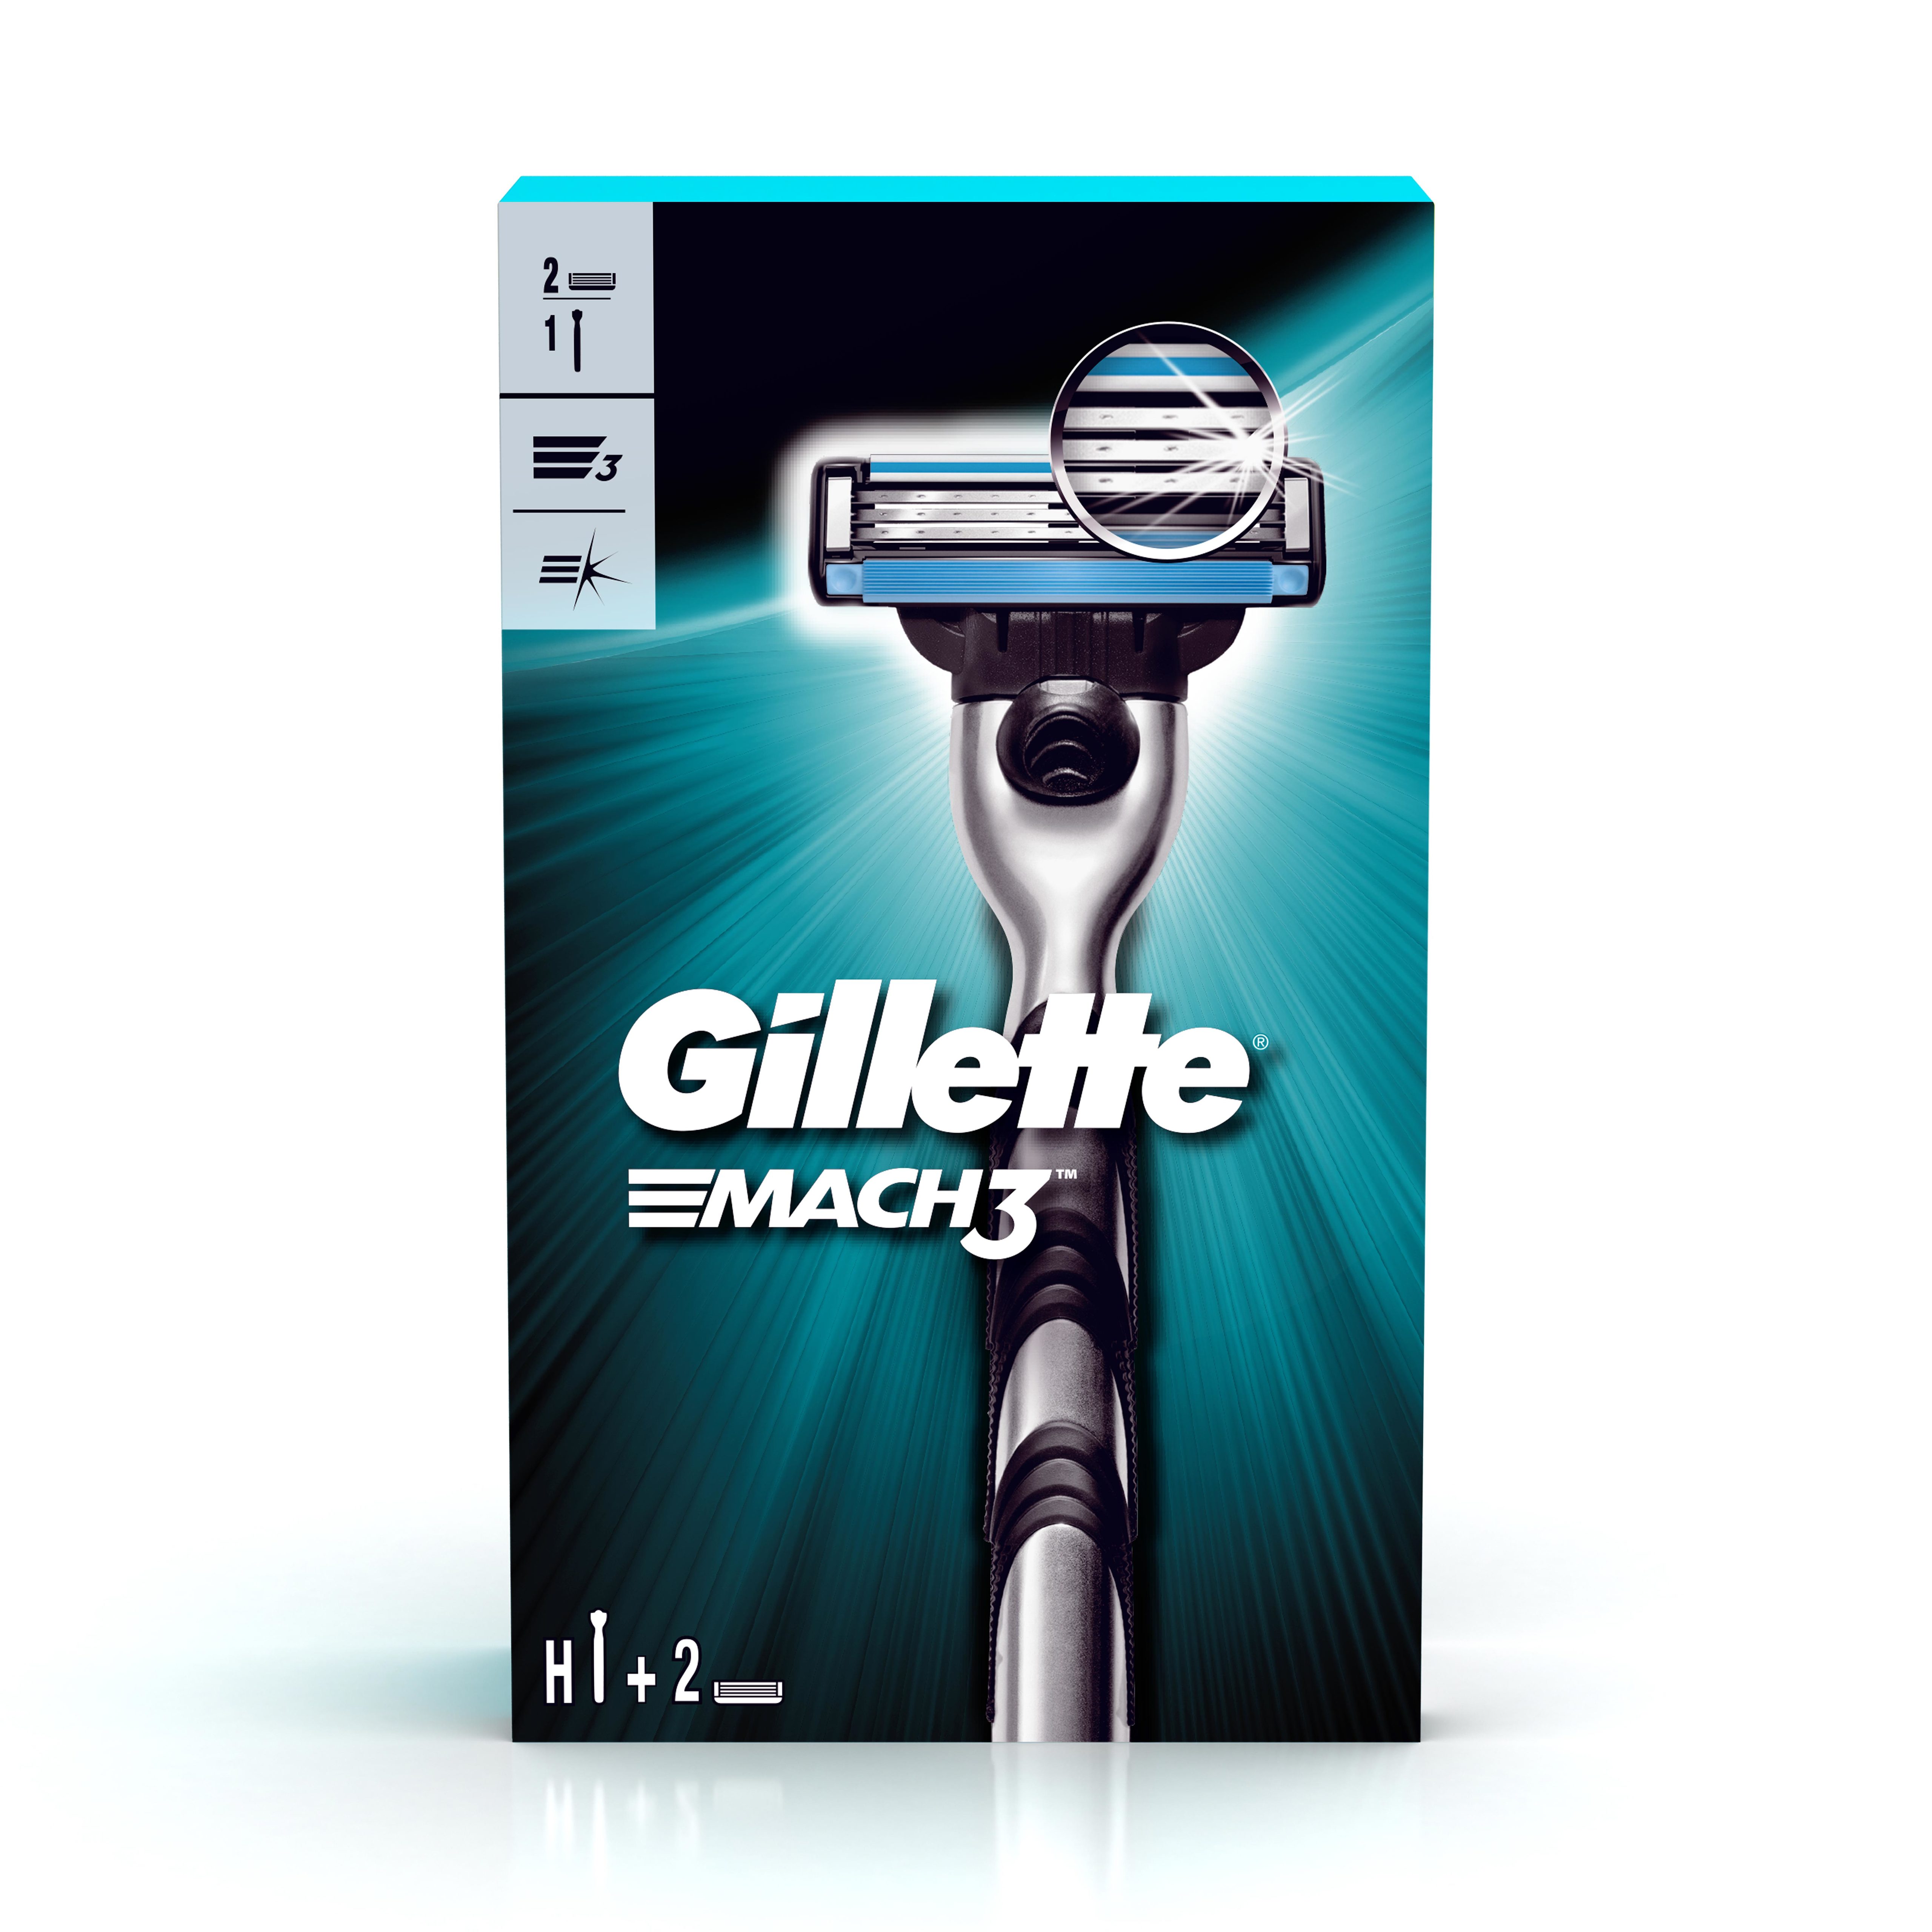 Gillette Mach 3 razor + 1 Shaving Blade